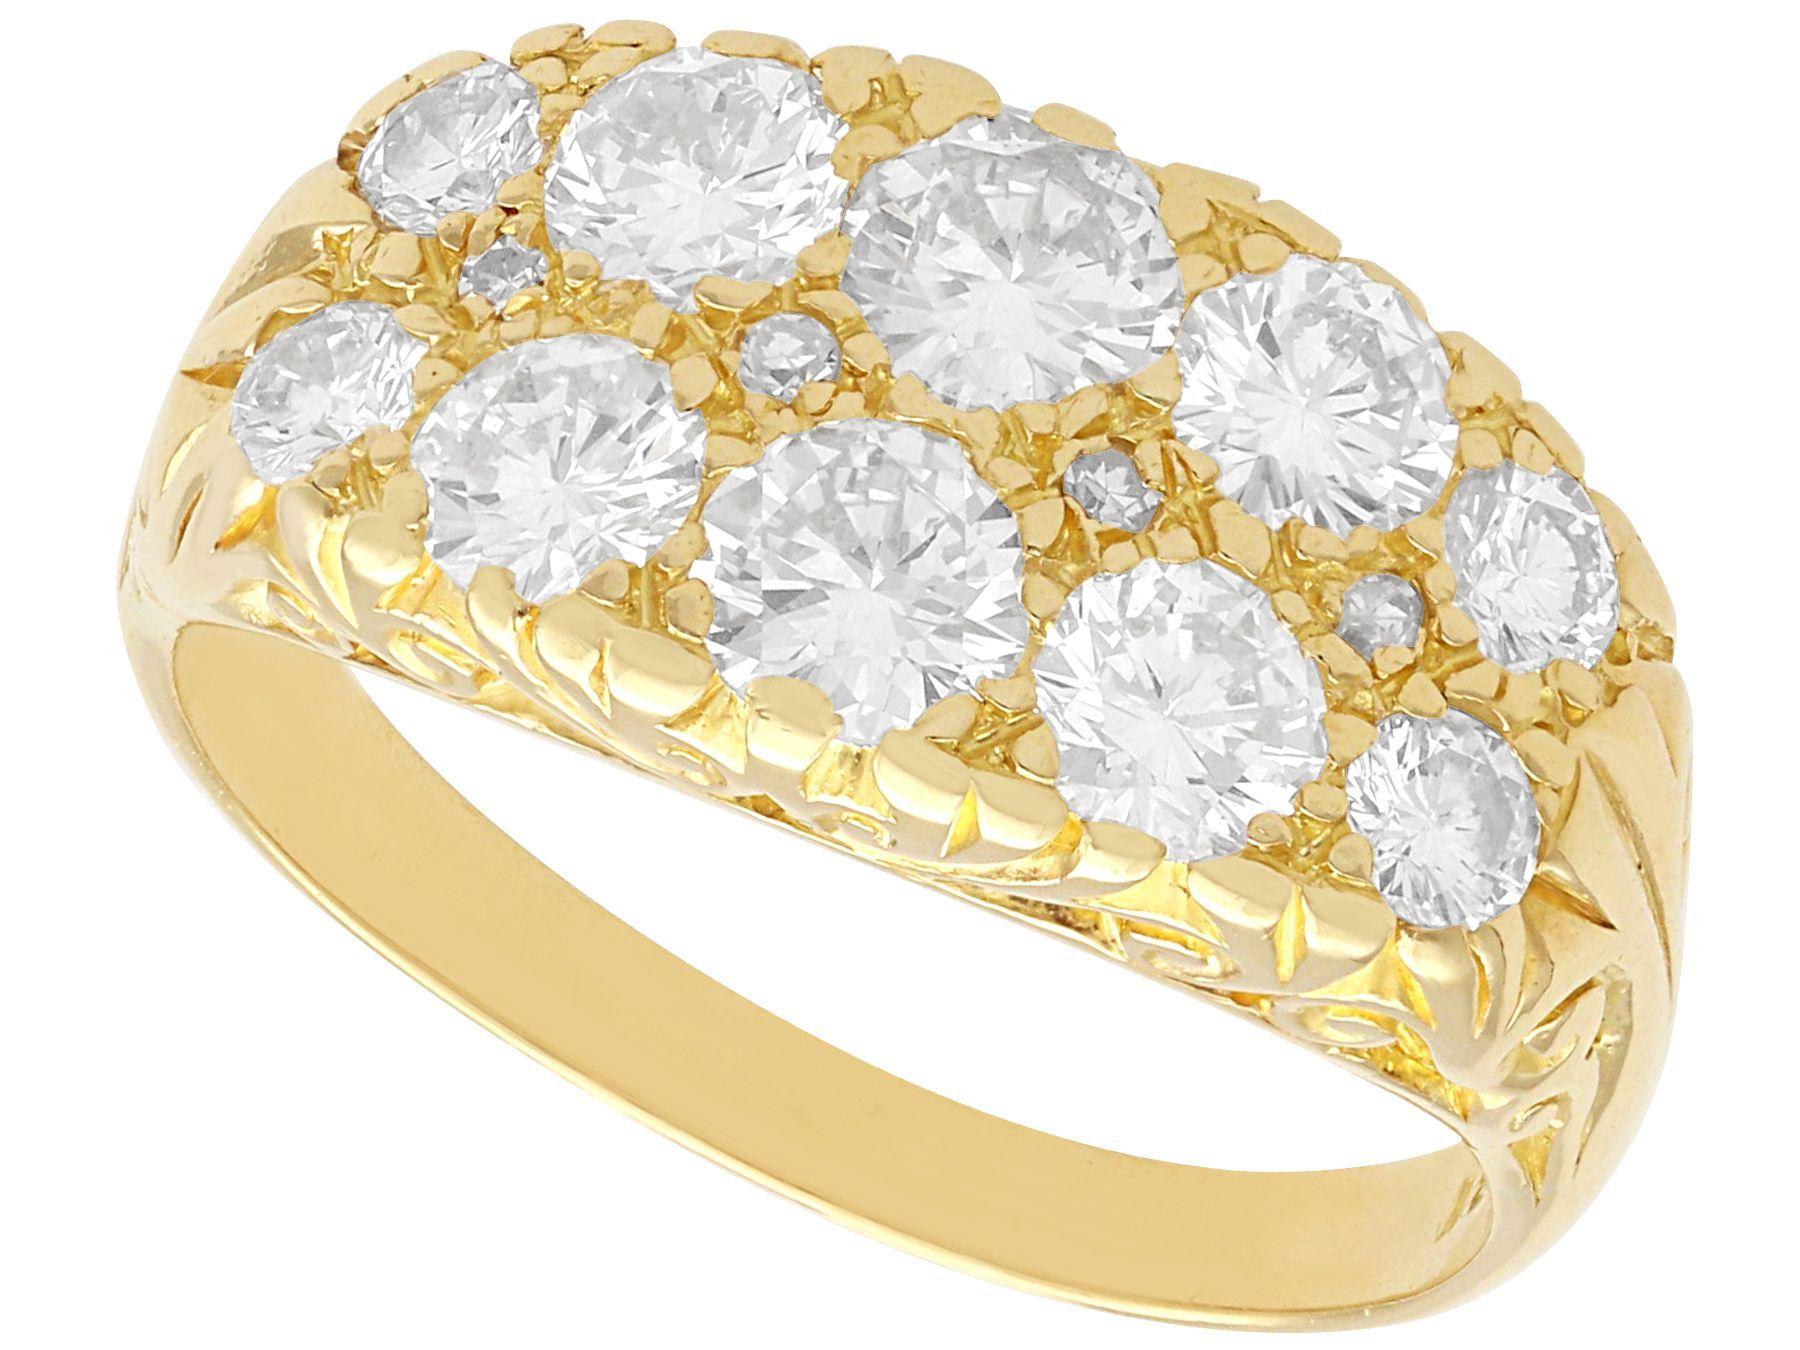 Ein atemberaubender Vintage-Ring aus den 1940er Jahren mit 2,45 Karat Diamanten und 18 Karat Gelbgold; Teil unserer vielfältigen Diamantschmuck- und Nachlass-Schmuckkollektionen

Dieser atemberaubende, feine und beeindruckende Vintage-Diamantring